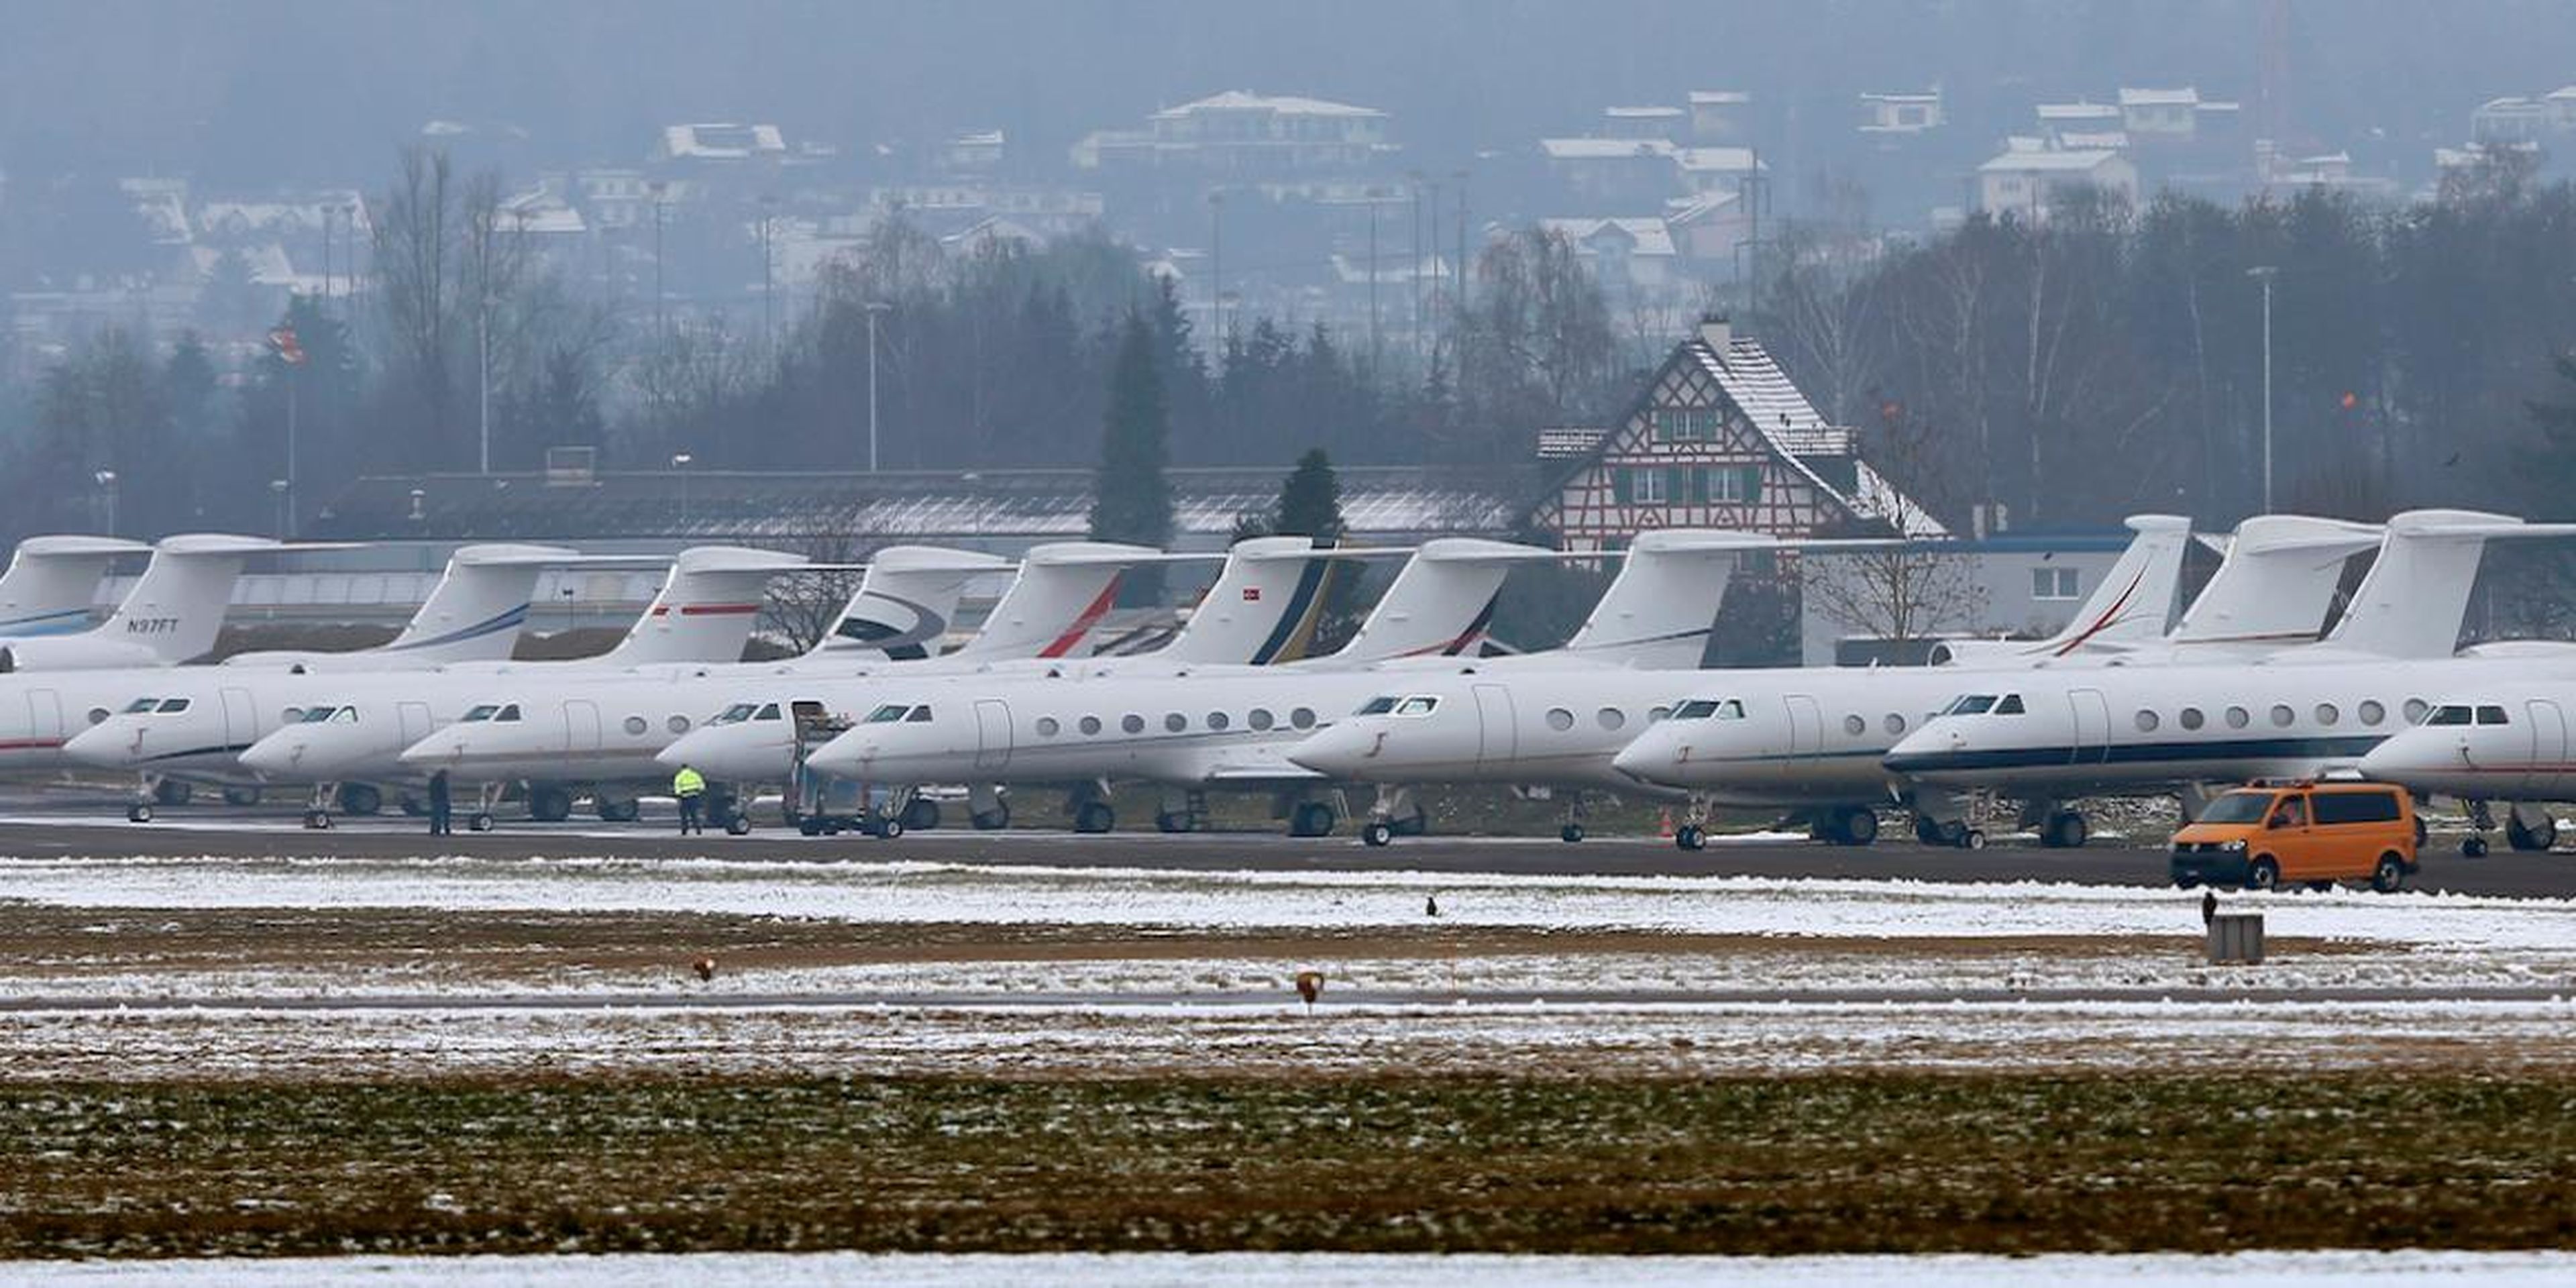 Aviones de pasajeros estacionados en la base de la Fuerza Aérea Suiza en Duebendorf, utilizada por quienes viajan a la reunión anual del Foro Económico Mundial en Davos, Suiza, en enero de 2016.